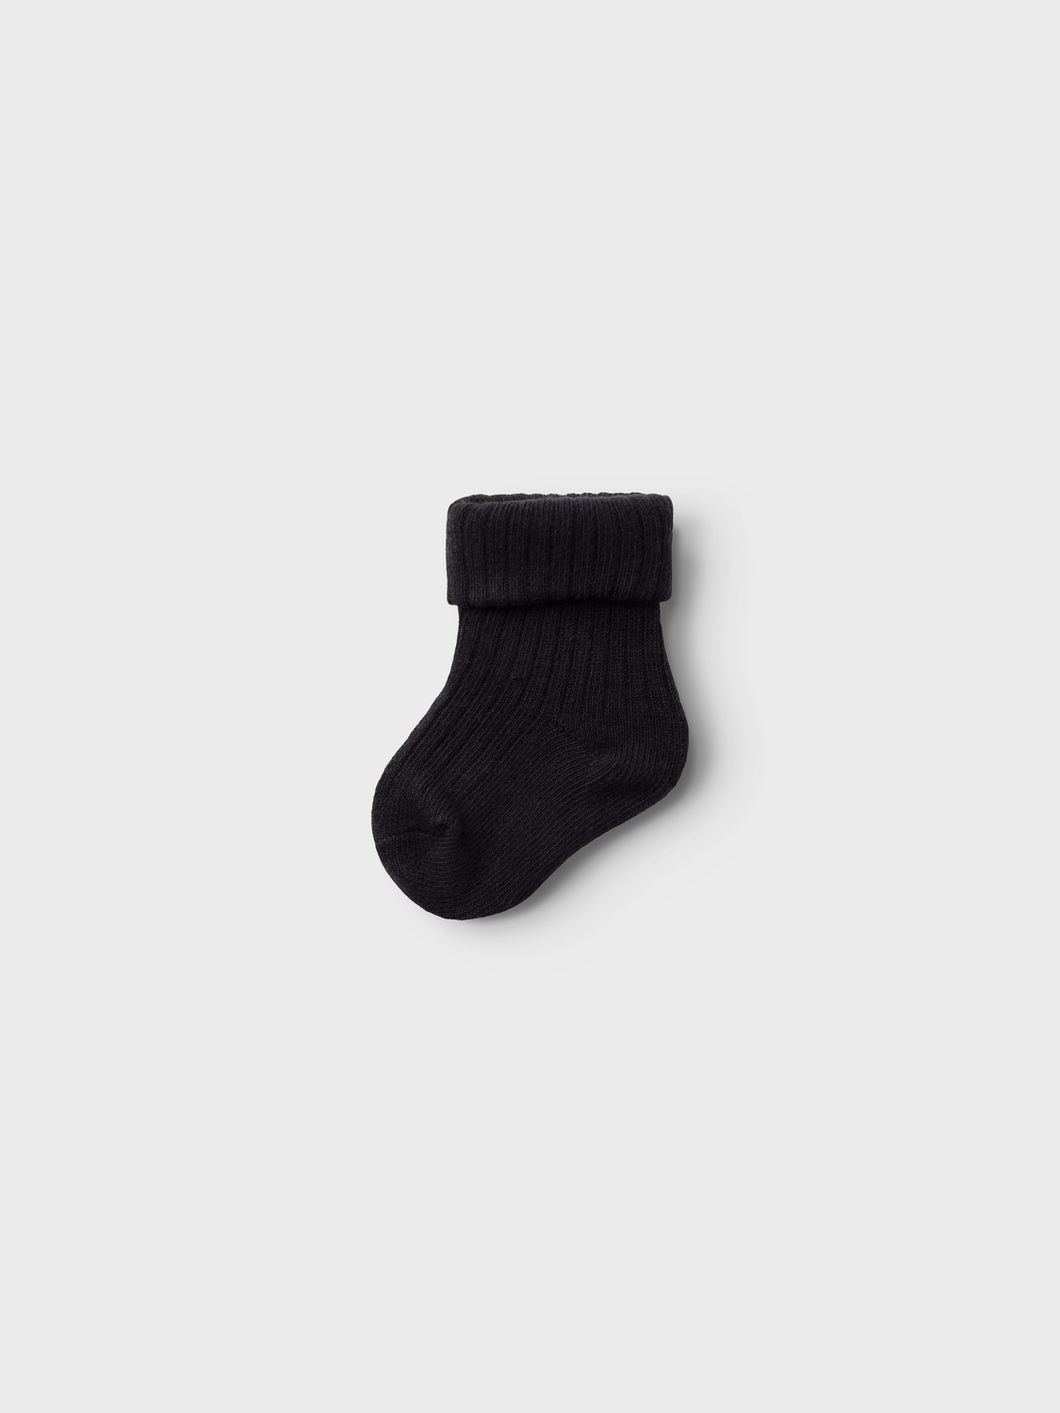 NBMROR Socks - Black